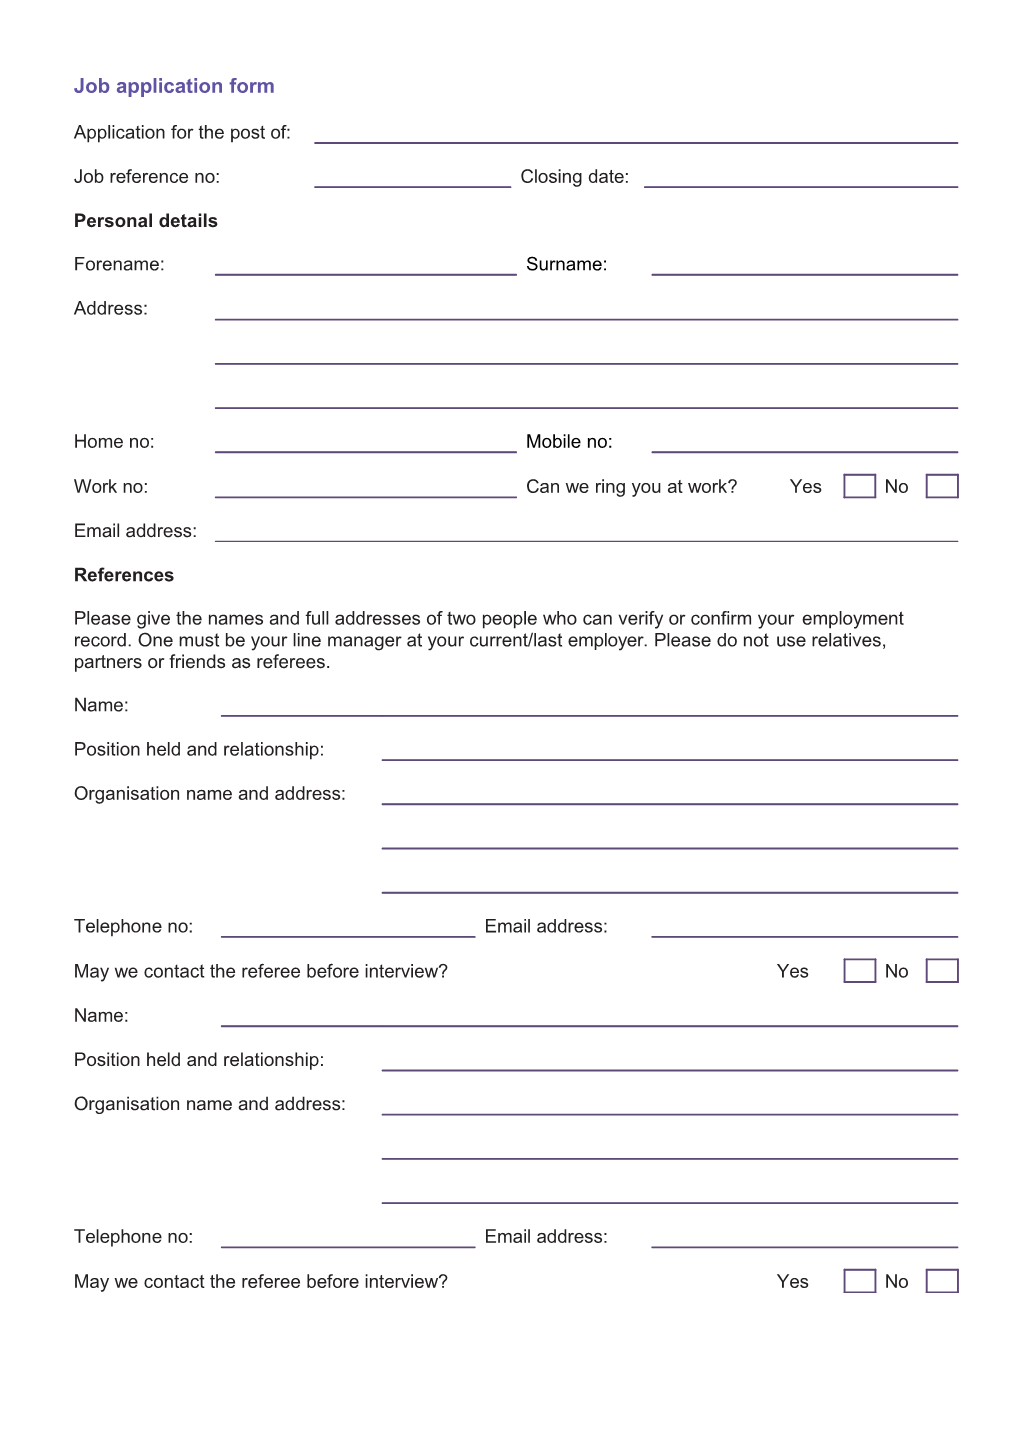 Job Application Form s8